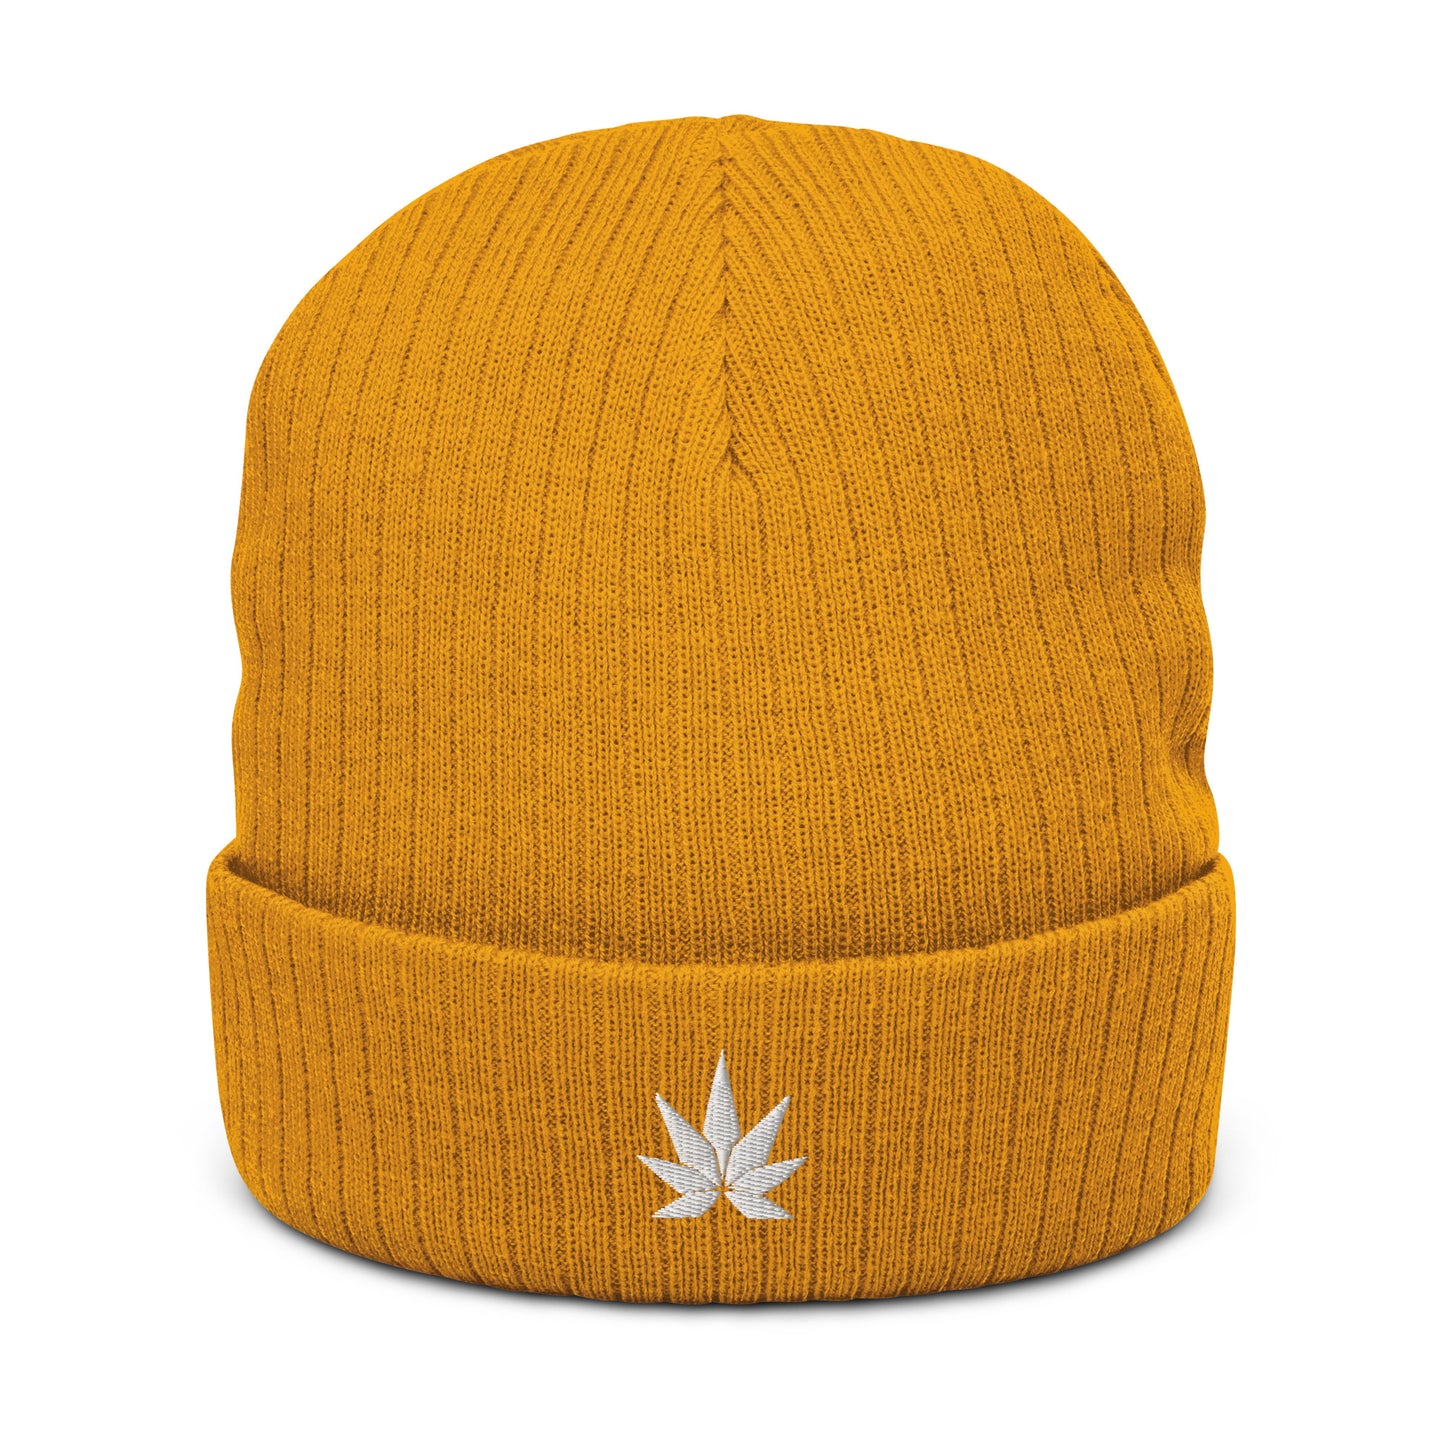 White Cannabis Leaf Ribbed knit Beanie